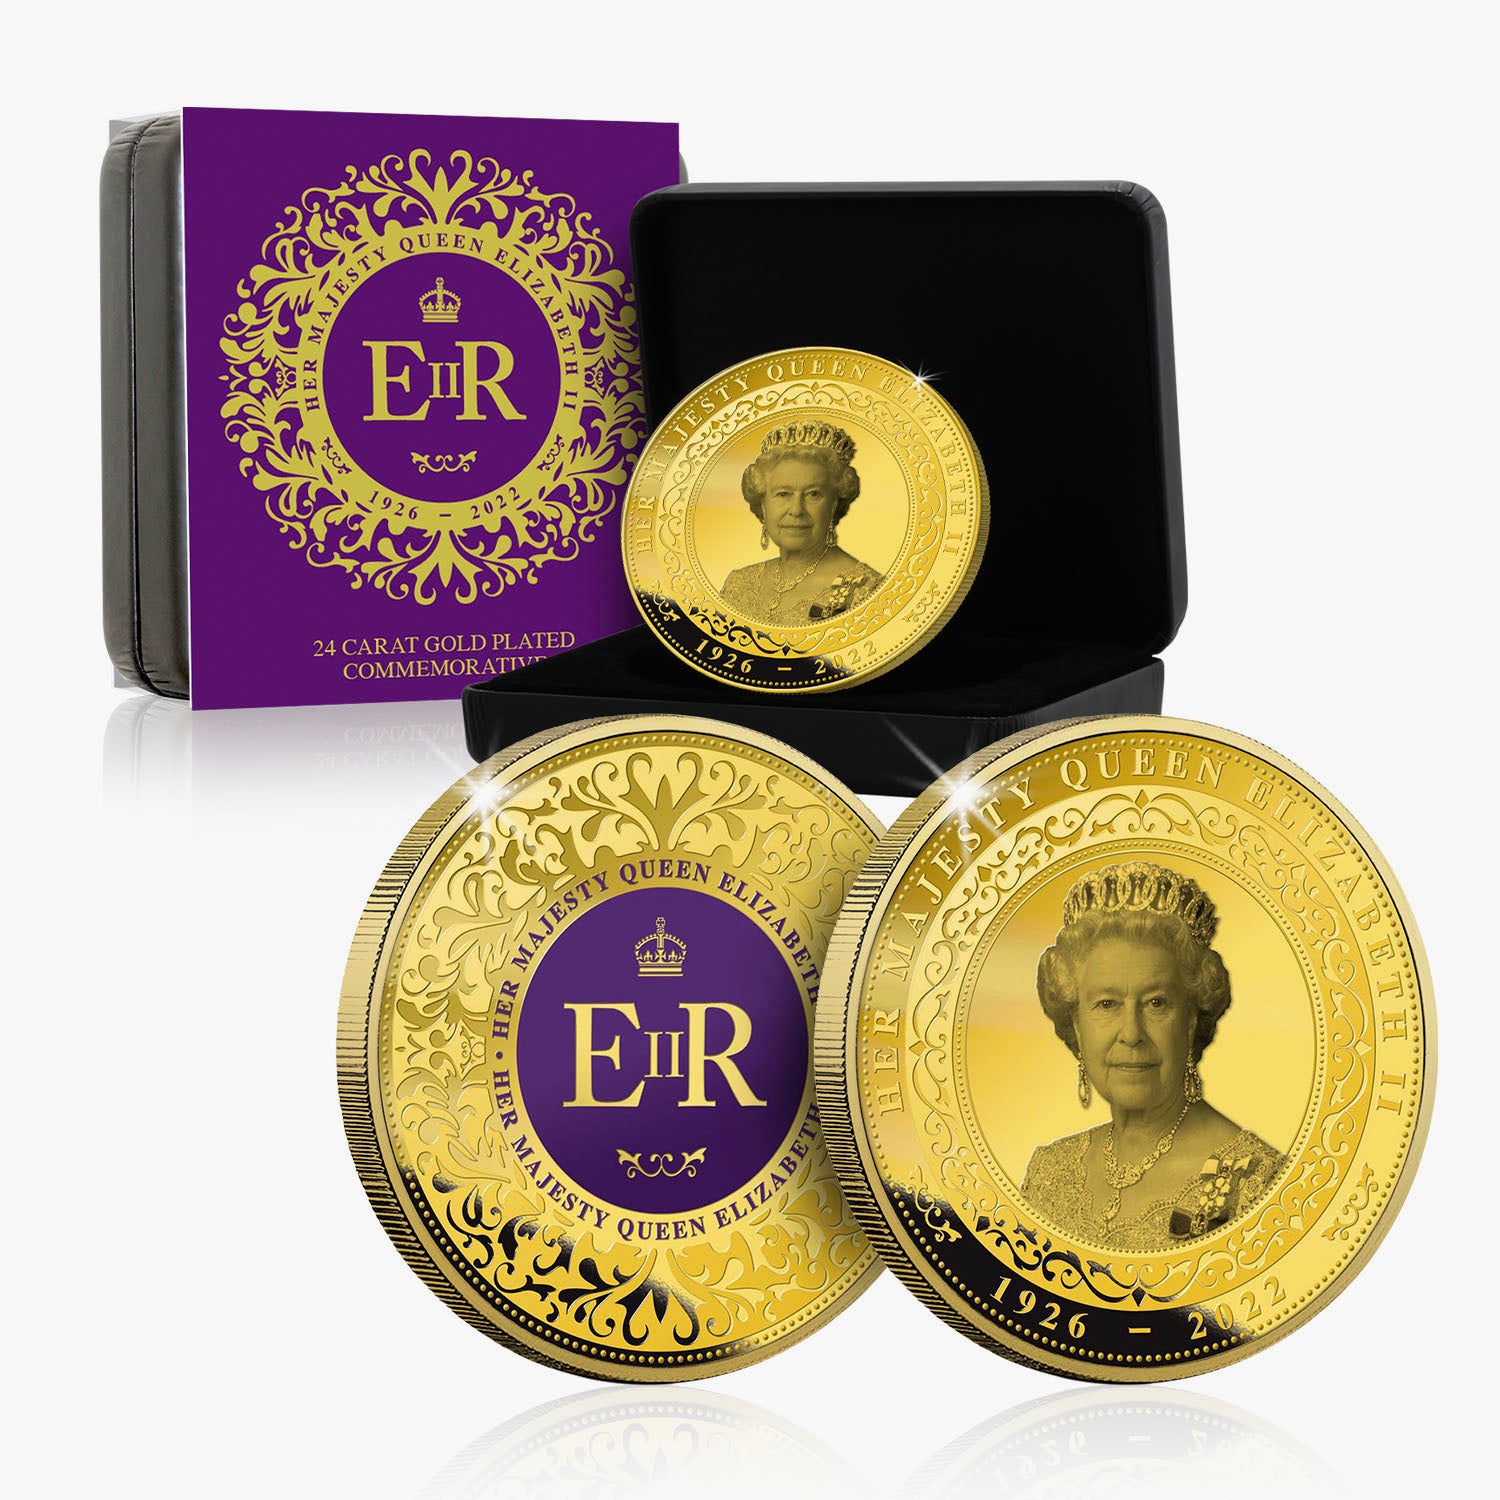 エリザベス 2 世女王陛下の生涯を祝う - ゴールド エディション